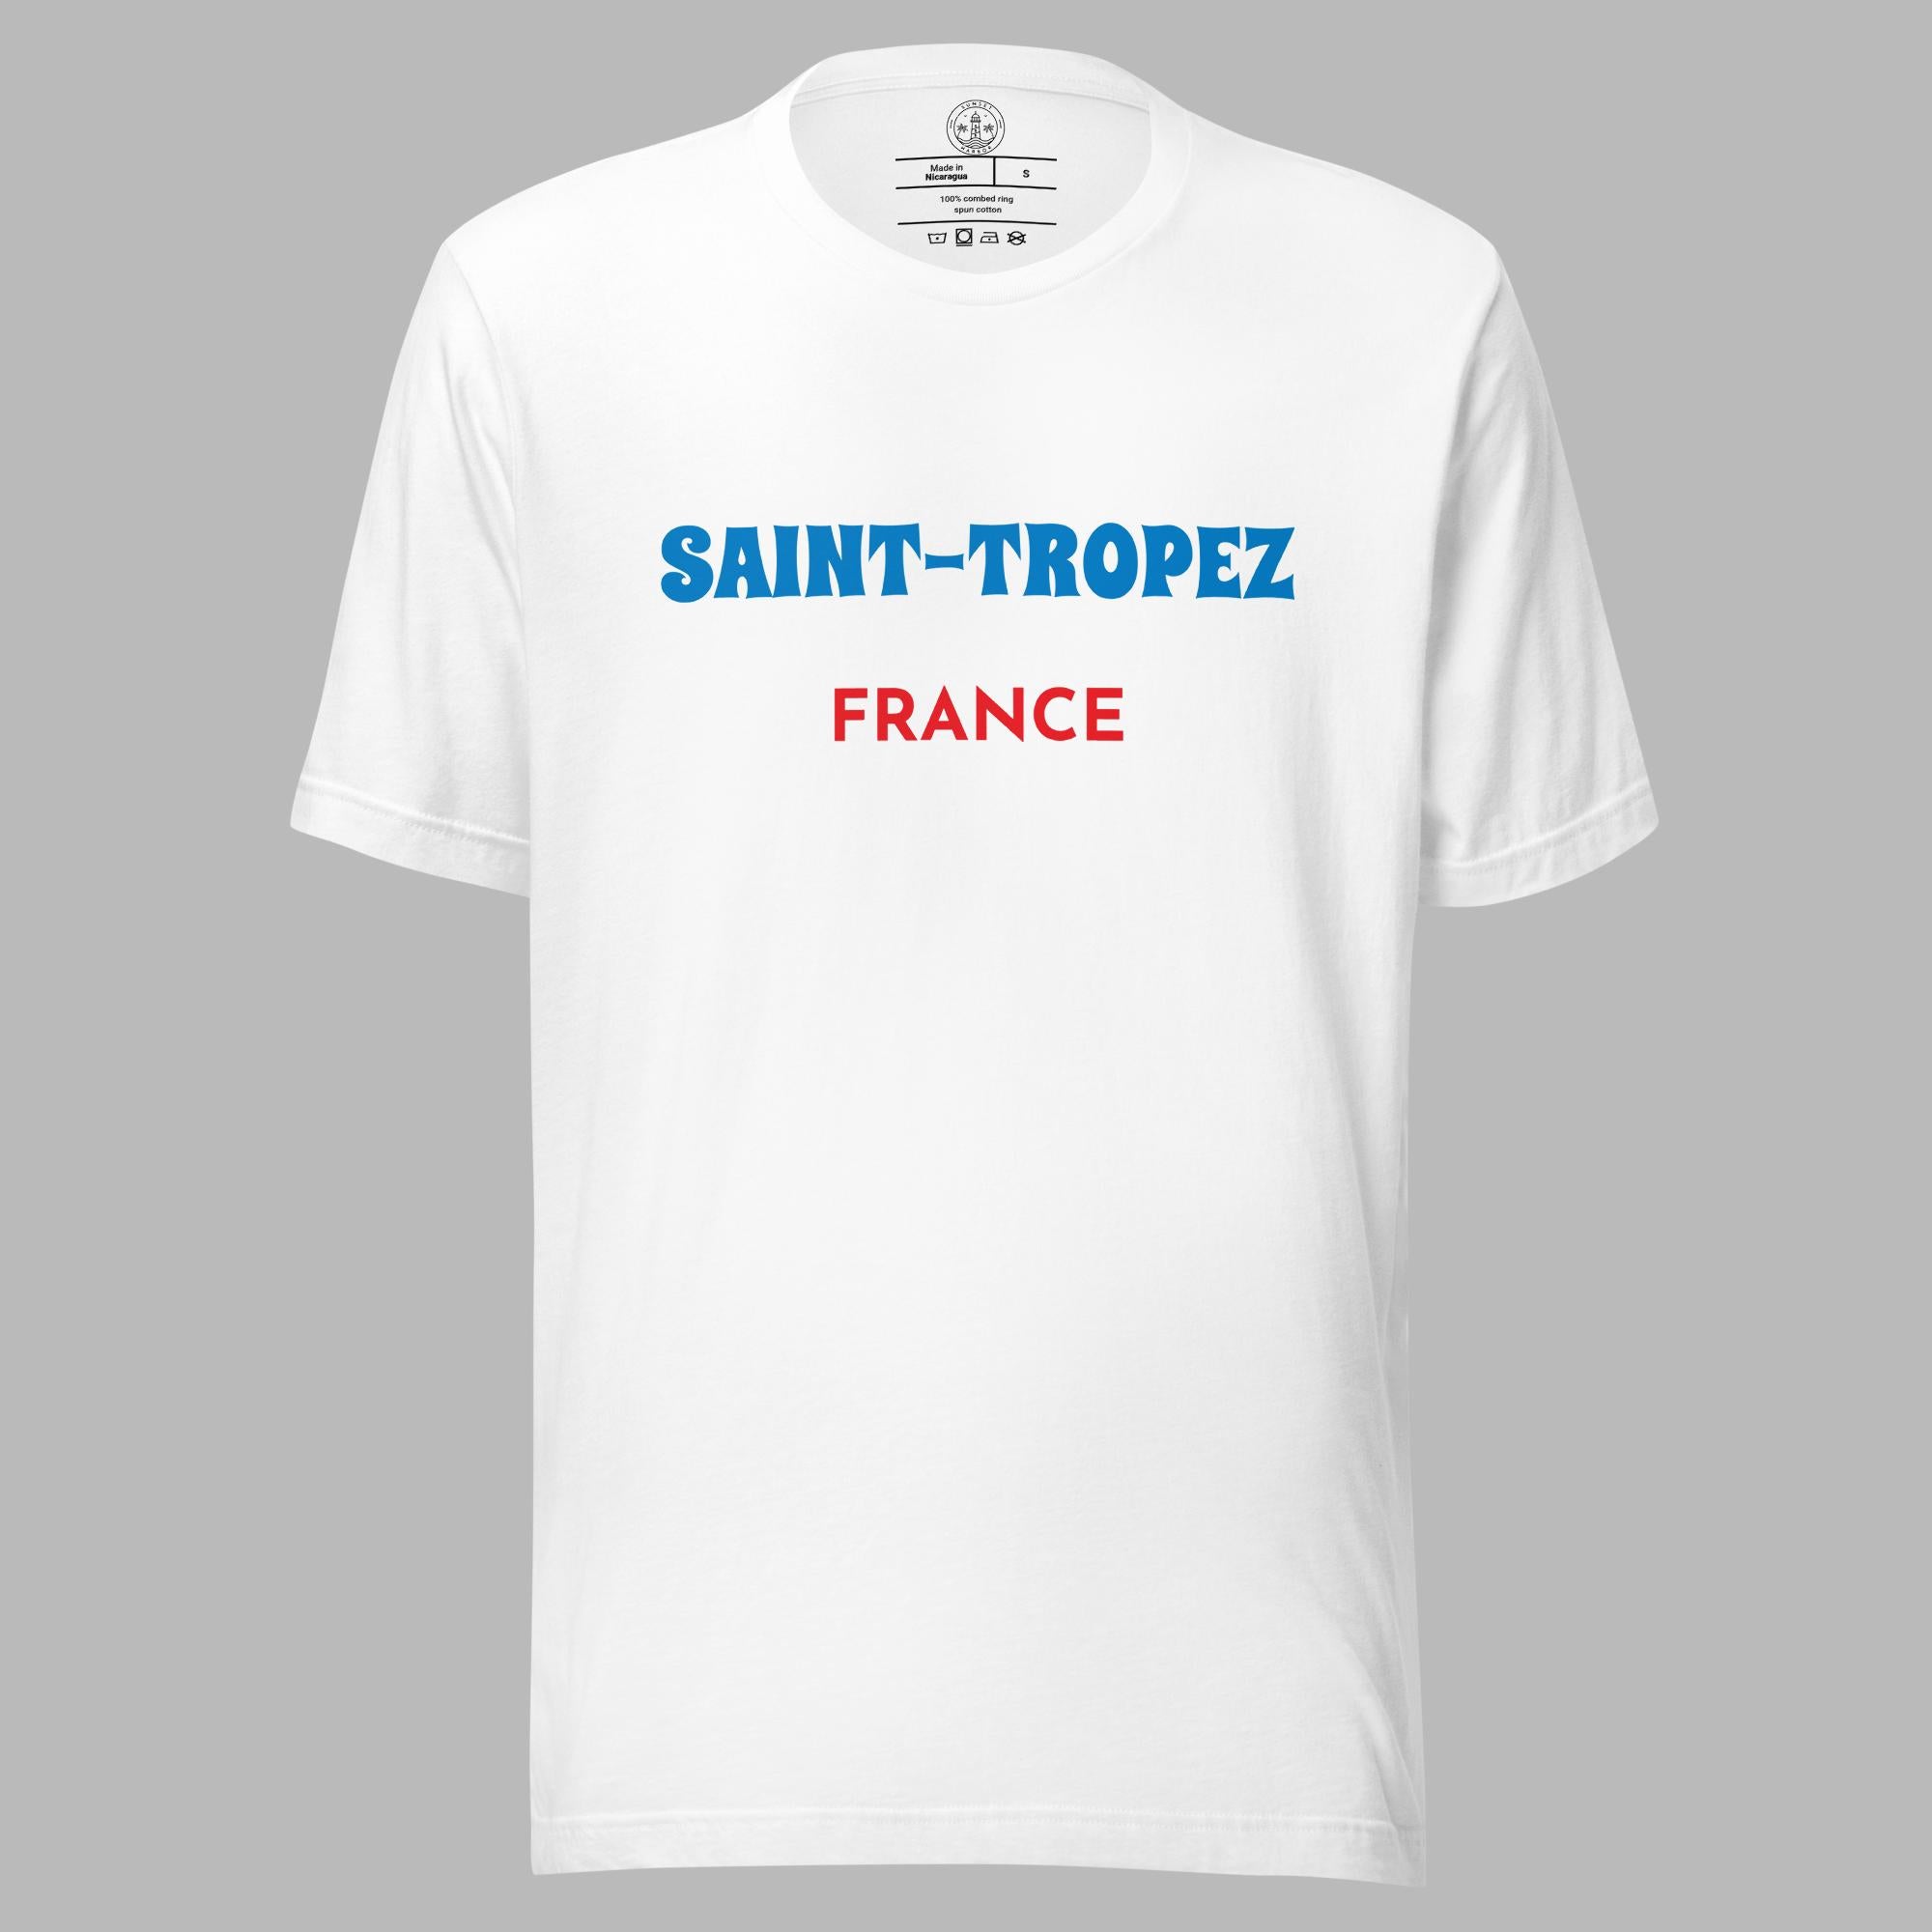 Camiseta unisex - Saint Tropez